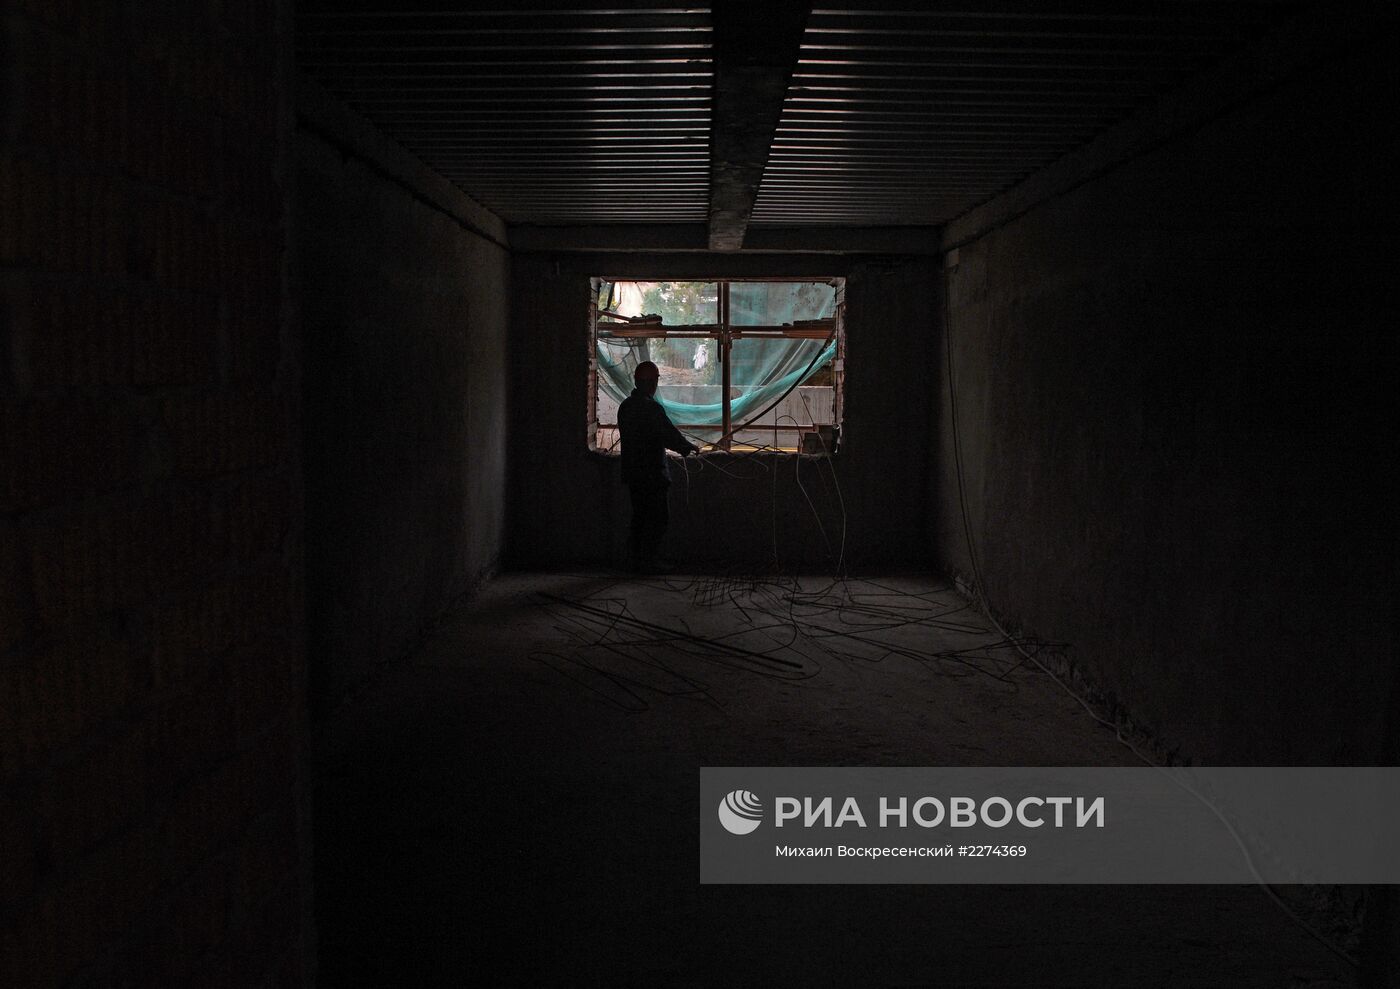 Реставрационные работы "Дома-коммуны" в Москве